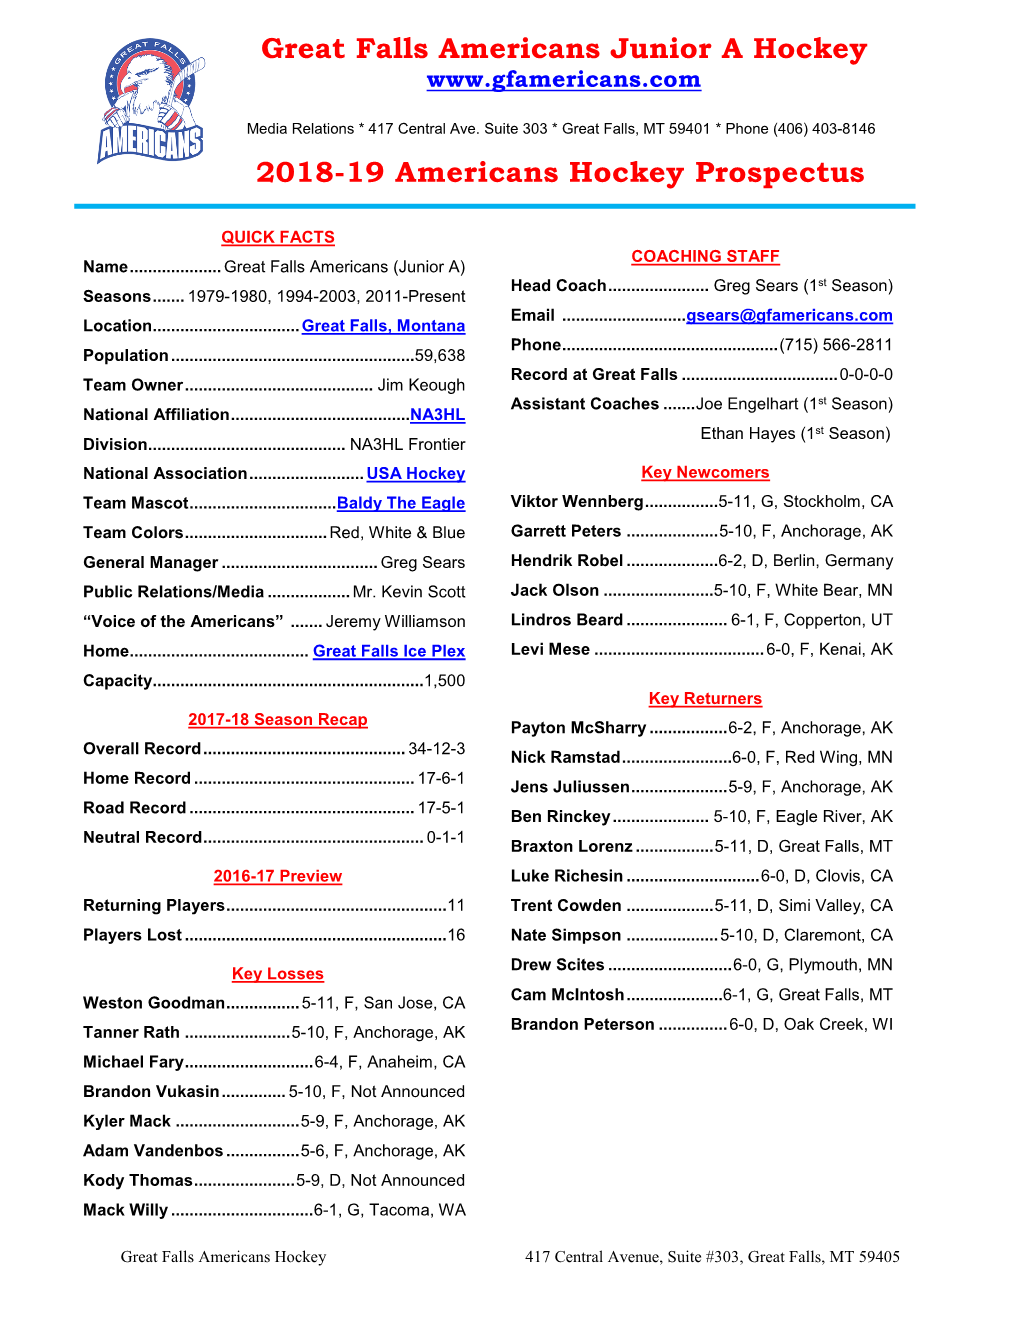 Great Falls Americans Junior a Hockey 2018-19 Americans Hockey